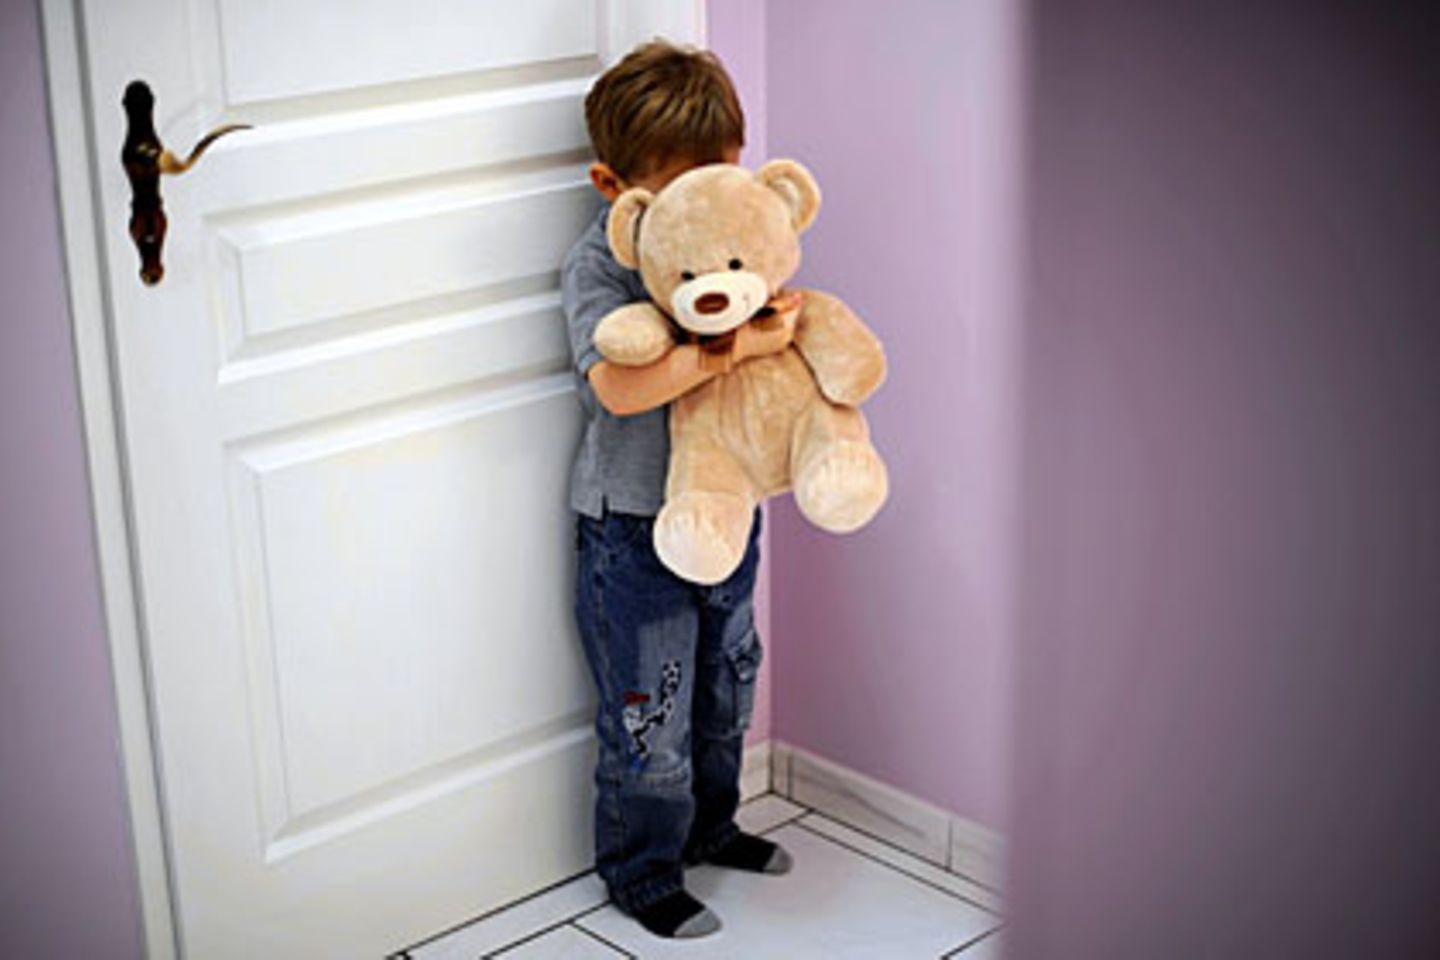 Gewalt an Kindern hinterlässt nicht nur seelische, sondern auch körperliche Schäden, die bleiben